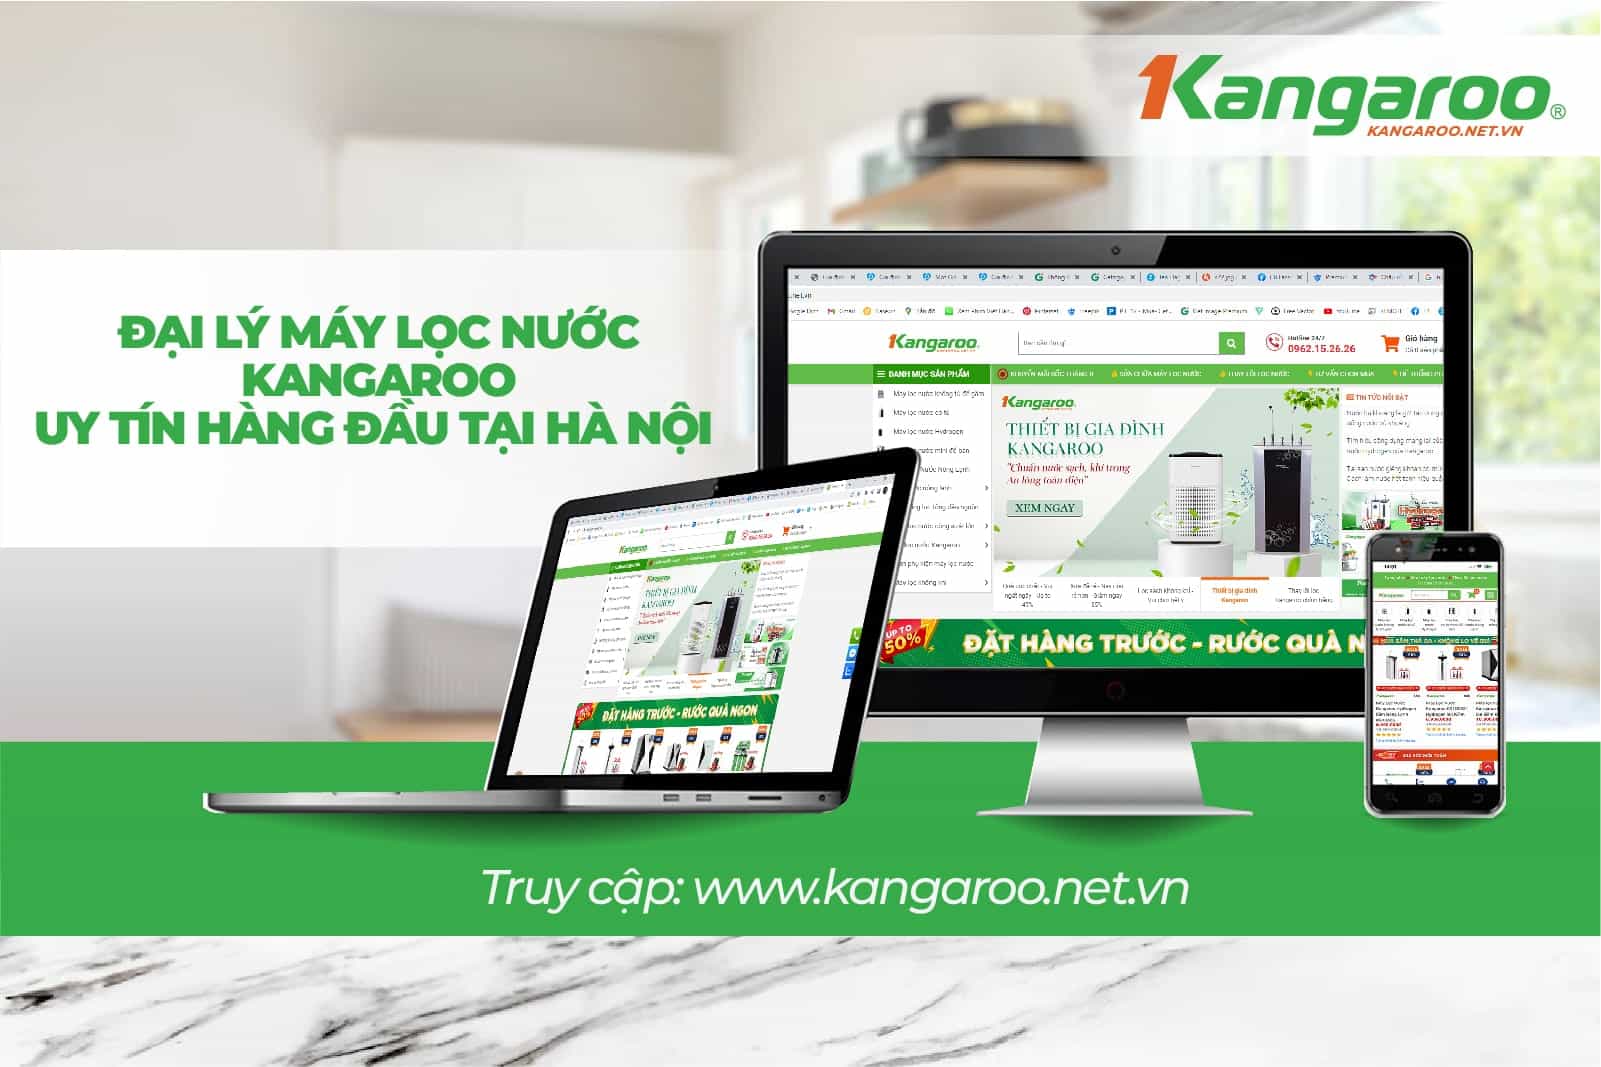 Kangaroo.net.vn là địa chỉ uy tín được mọi nhà tin dùng nhất hiện nay   